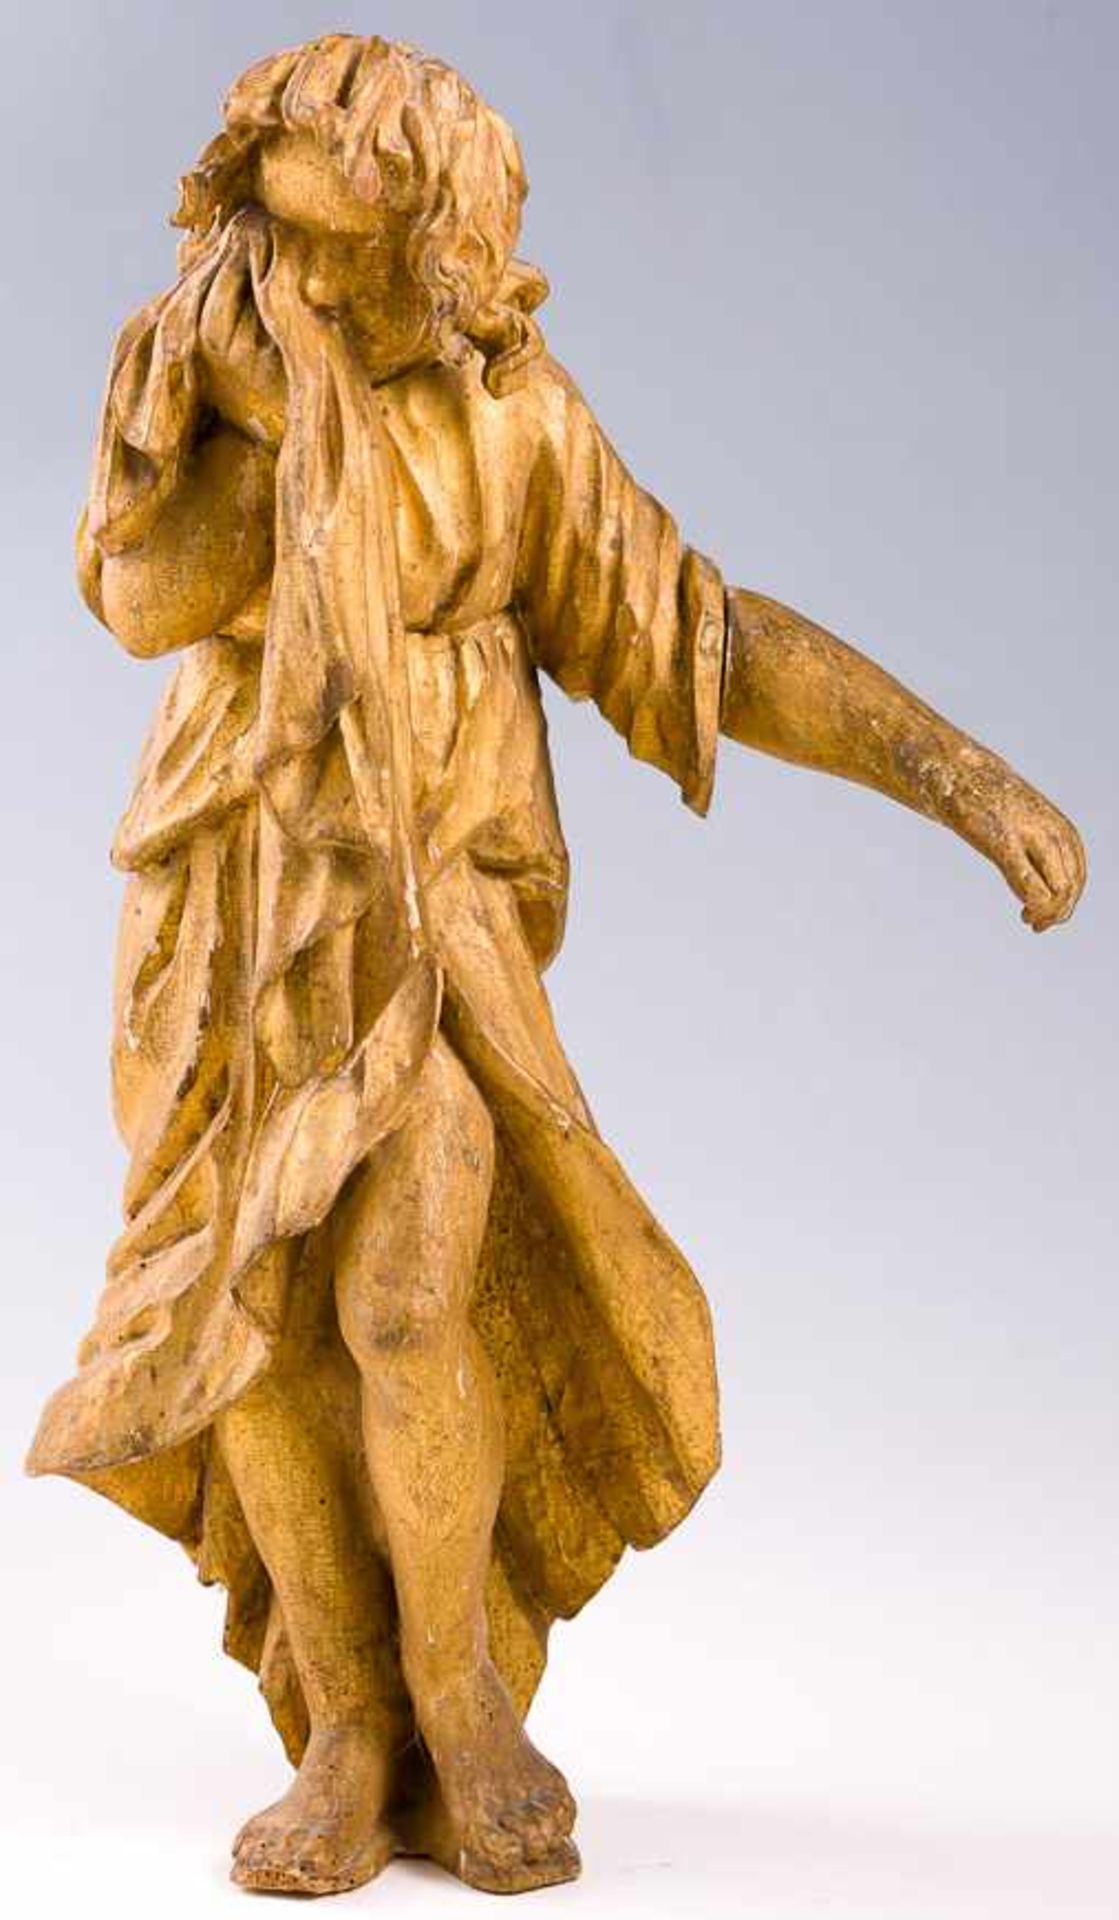 Süddeutsch (17. Jh.)Trauernder JohannesAus einer Kreuzigungsgruppe. Holz, geschnitzt, spätere